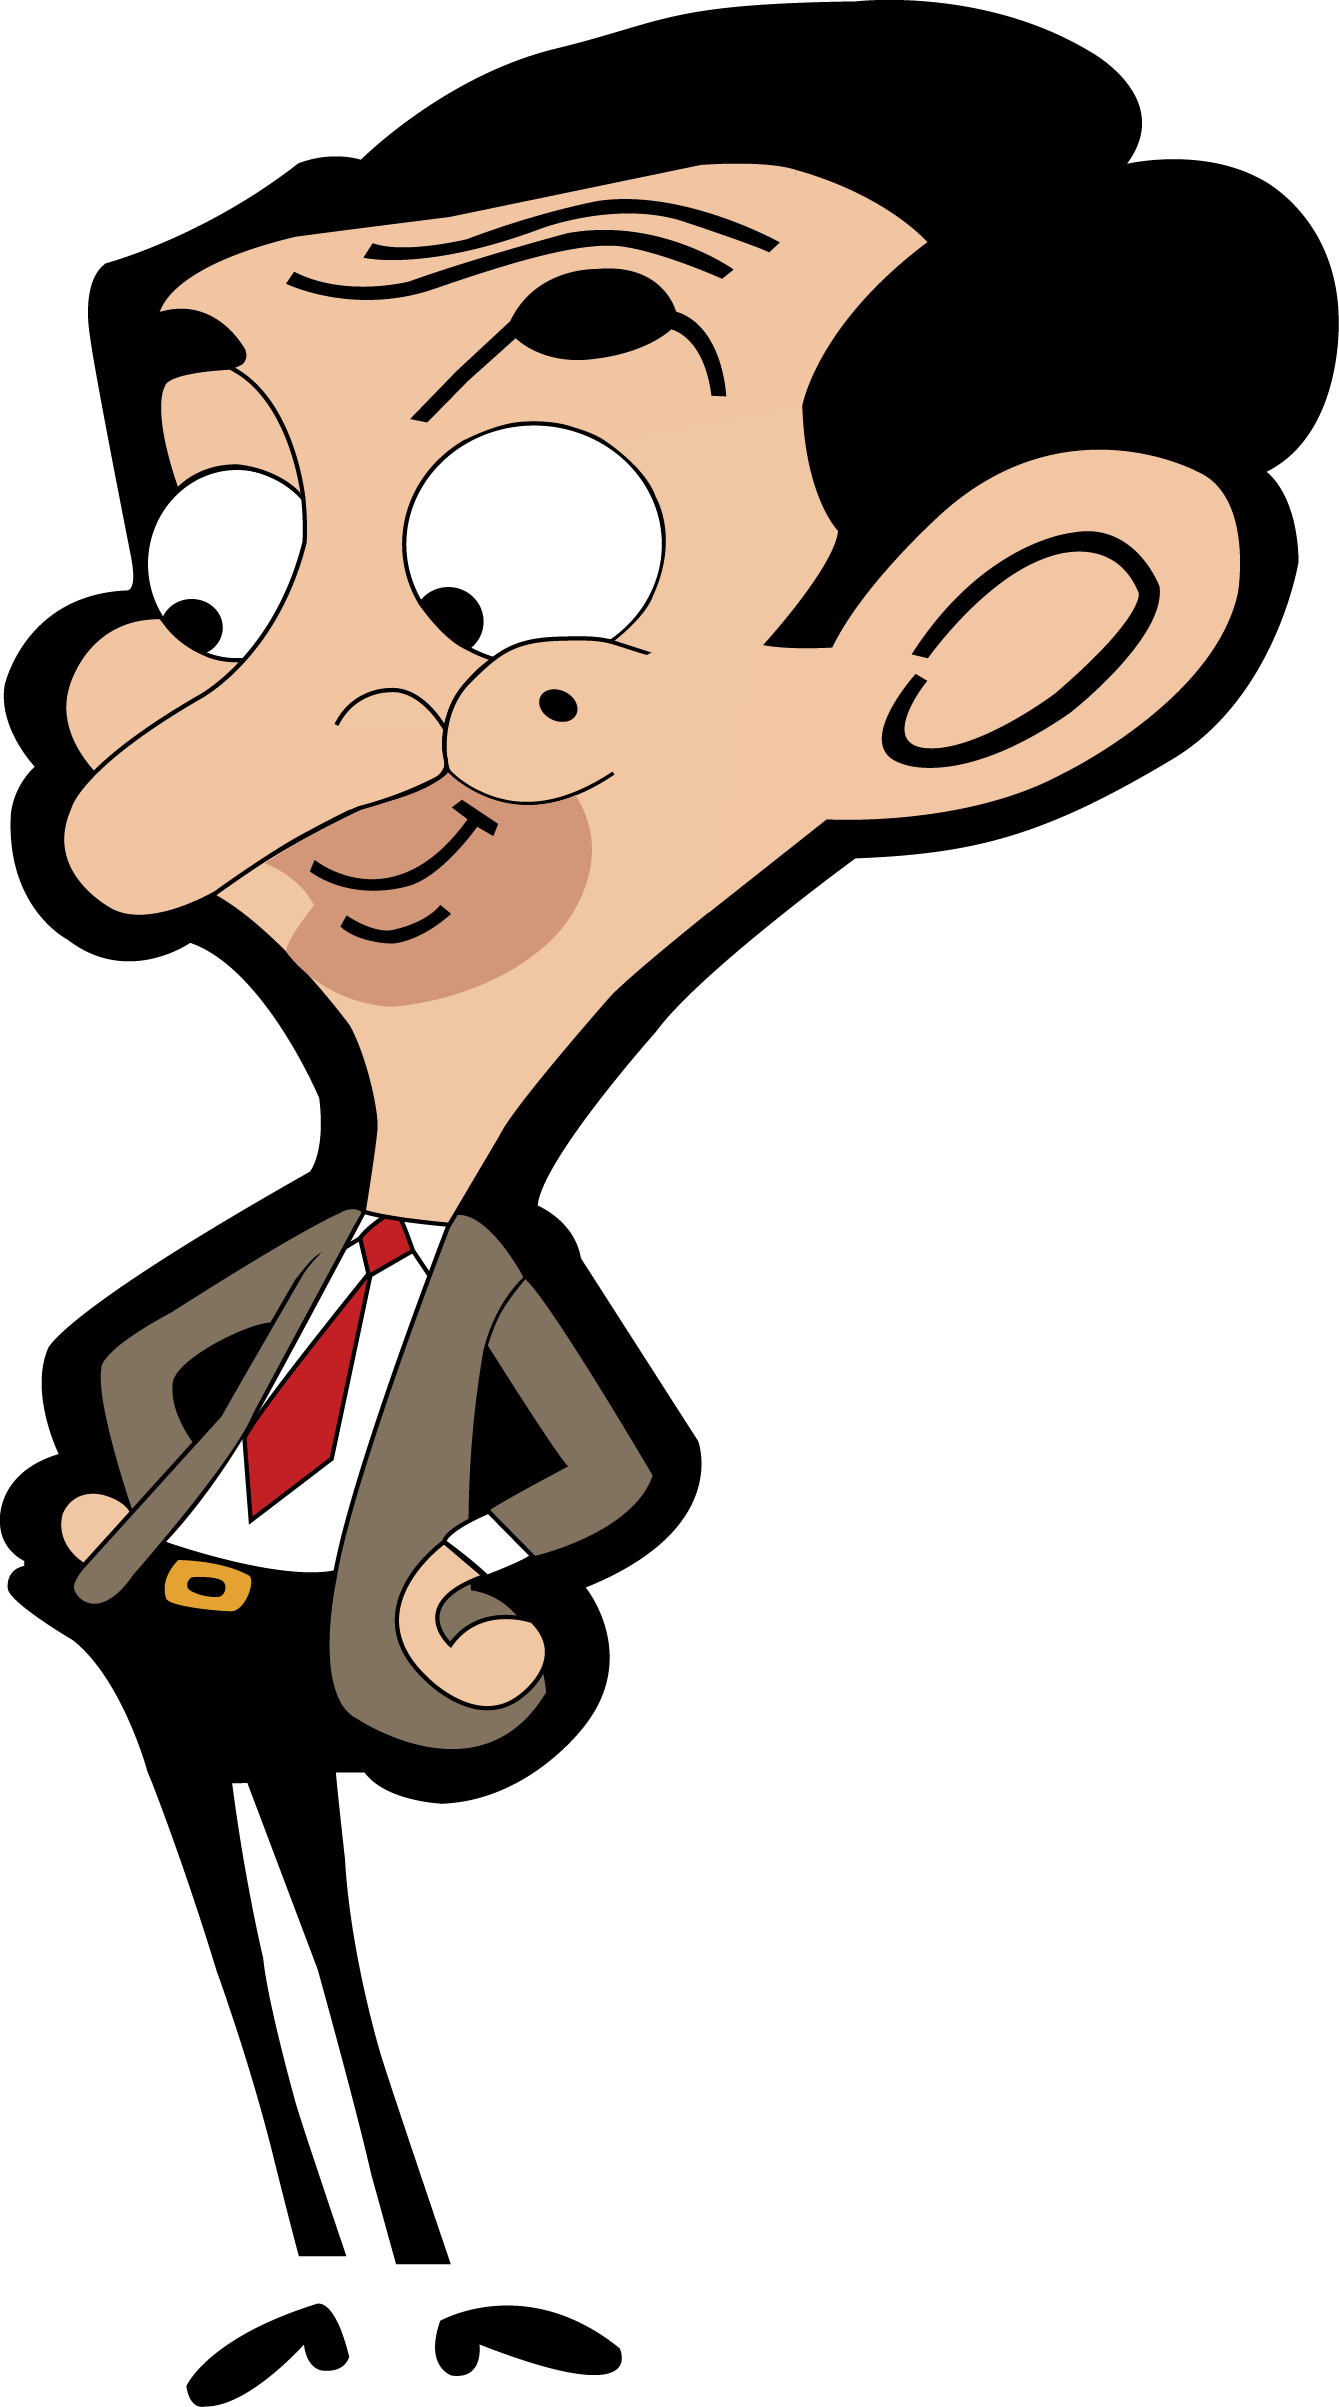 Cartooons  Mr Bean Cartoon Wallpaper Hd  Free Transparent PNG Clipart  Images Download